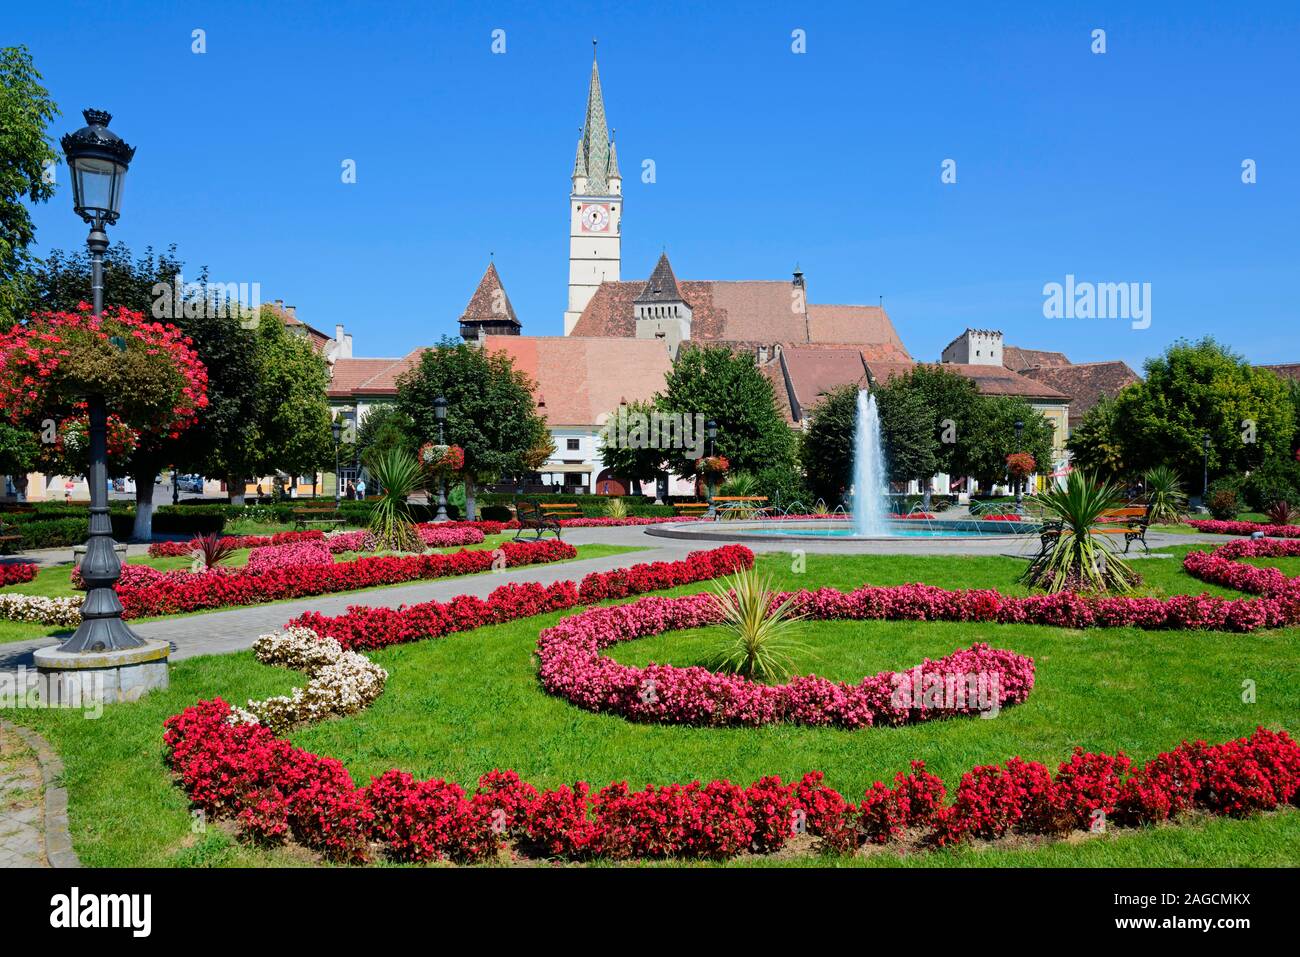 Dietro il trombettista inclinata torre del St. Margarethen Chiesa, Re Ferdinando Square, Medias, Transilvania, Romania Foto Stock